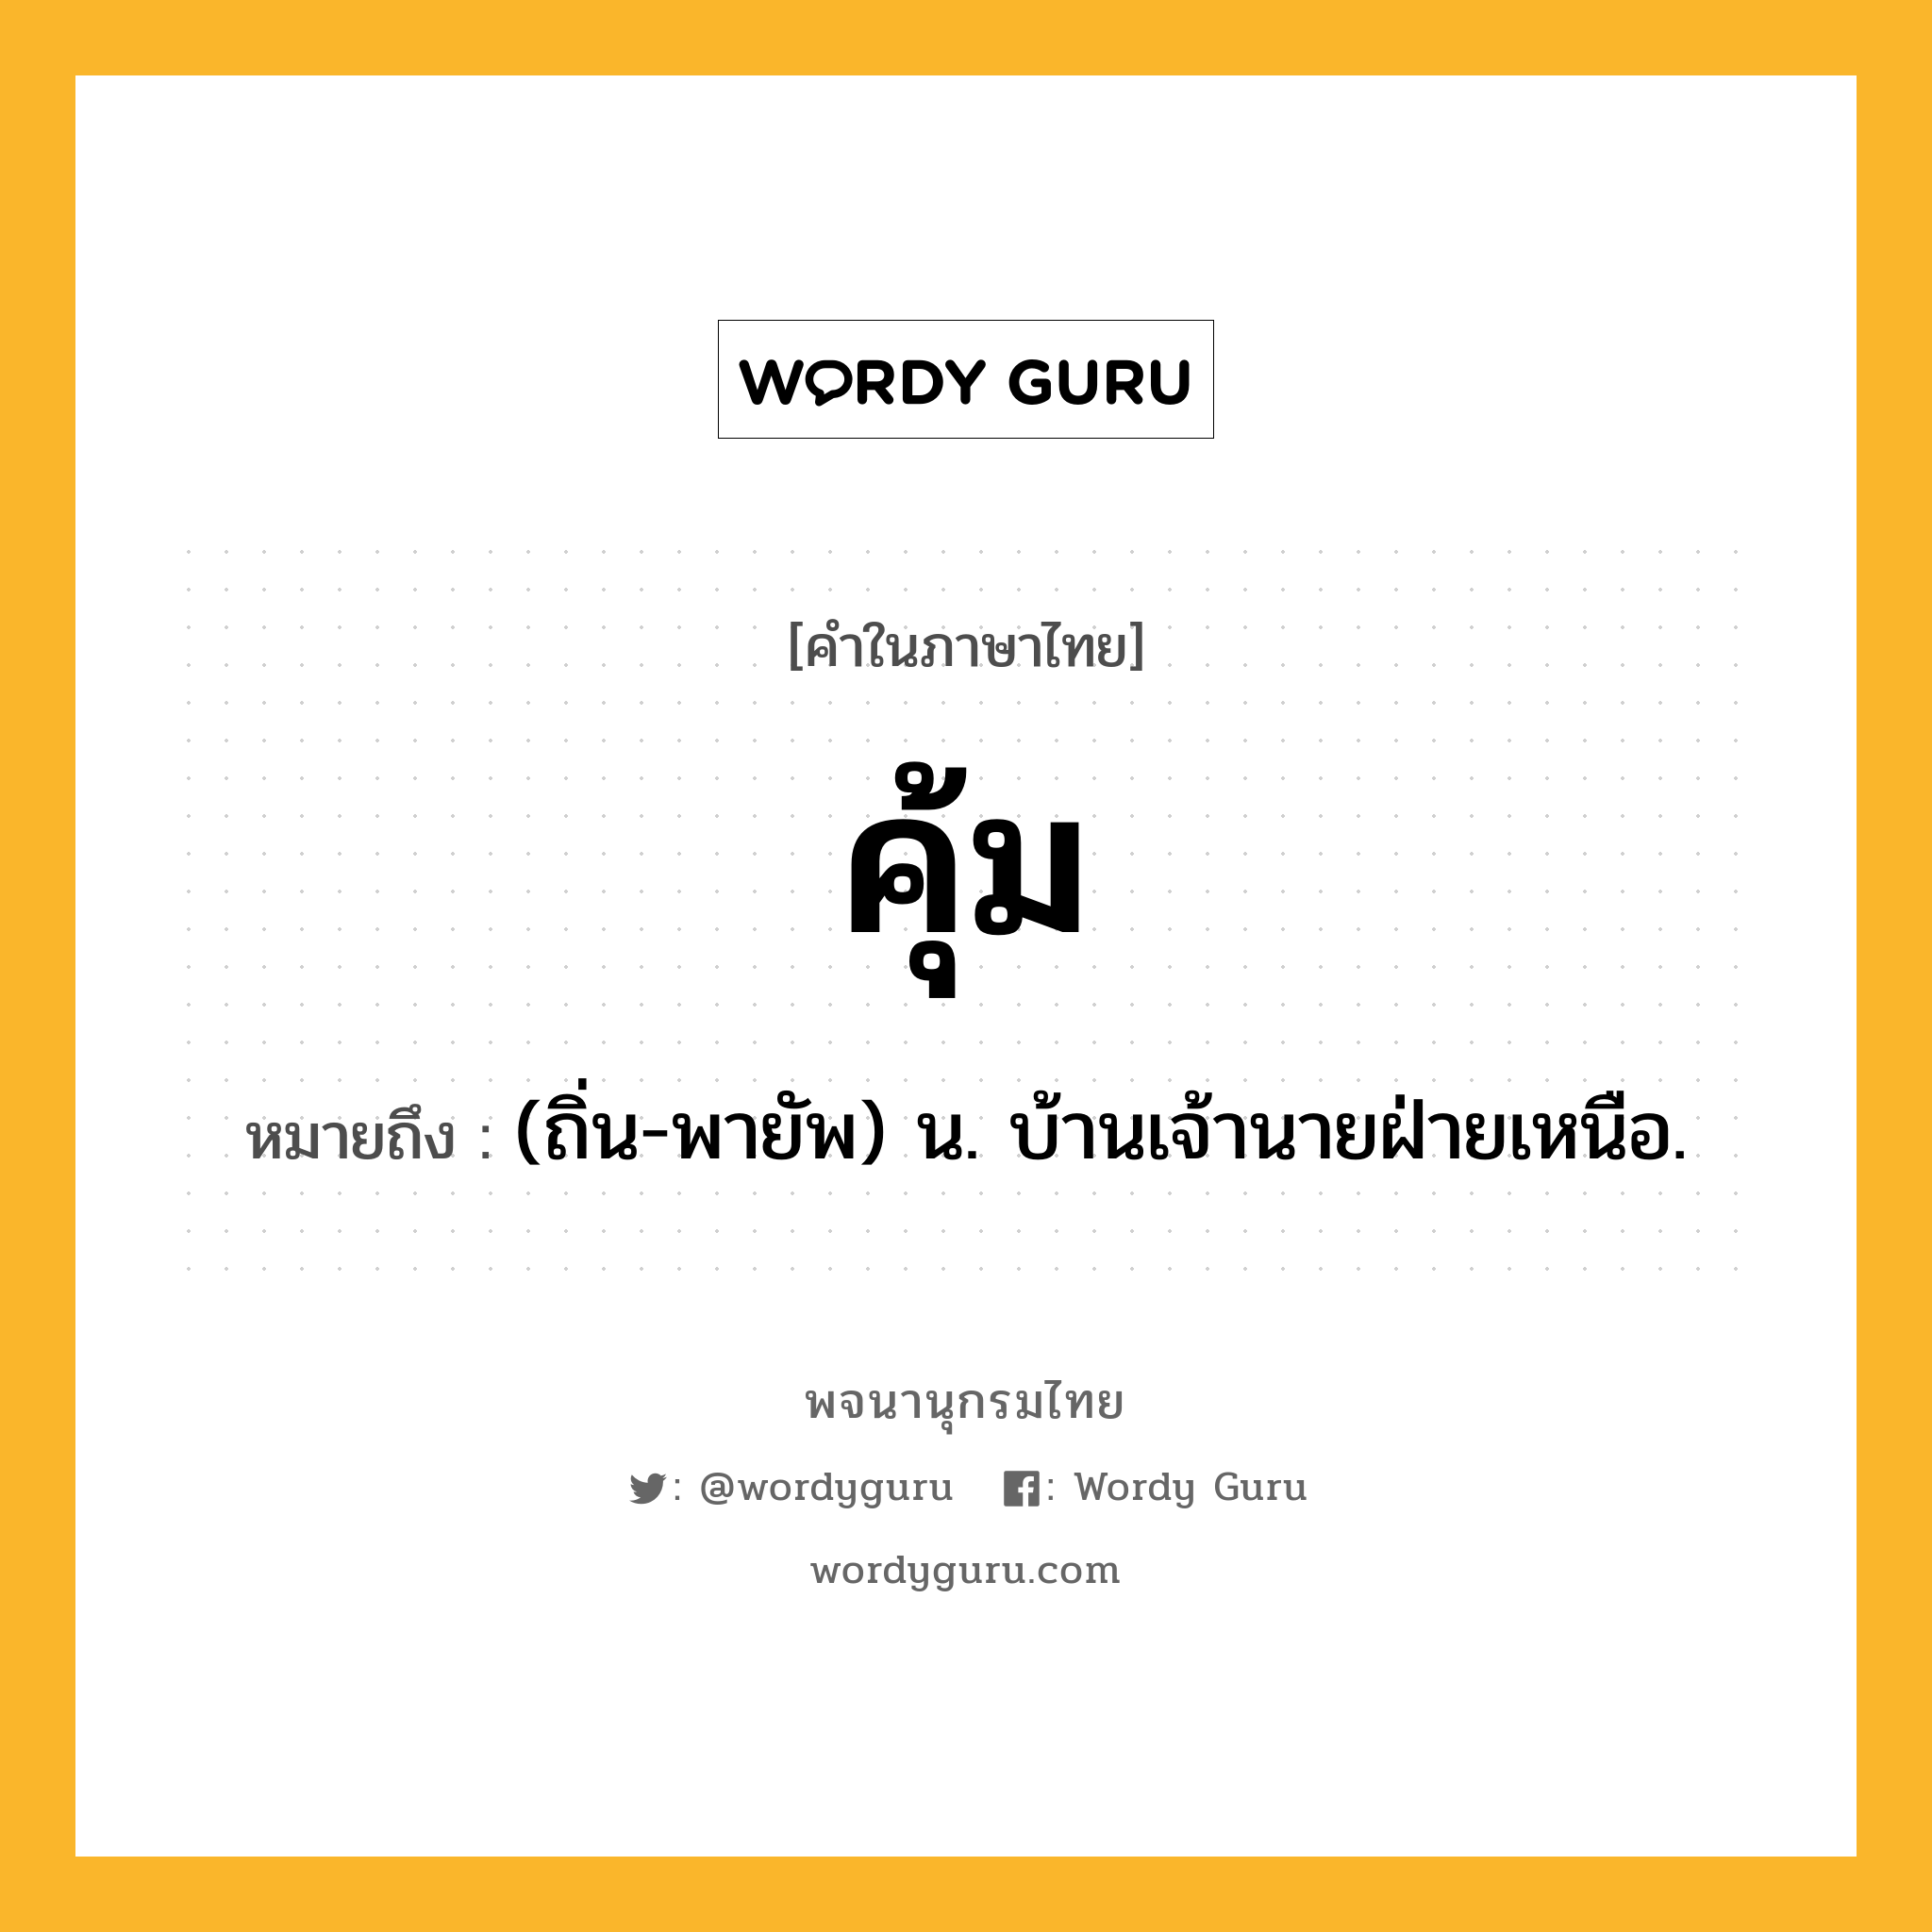 คุ้ม หมายถึงอะไร?, คำในภาษาไทย คุ้ม หมายถึง (ถิ่น-พายัพ) น. บ้านเจ้านายฝ่ายเหนือ.